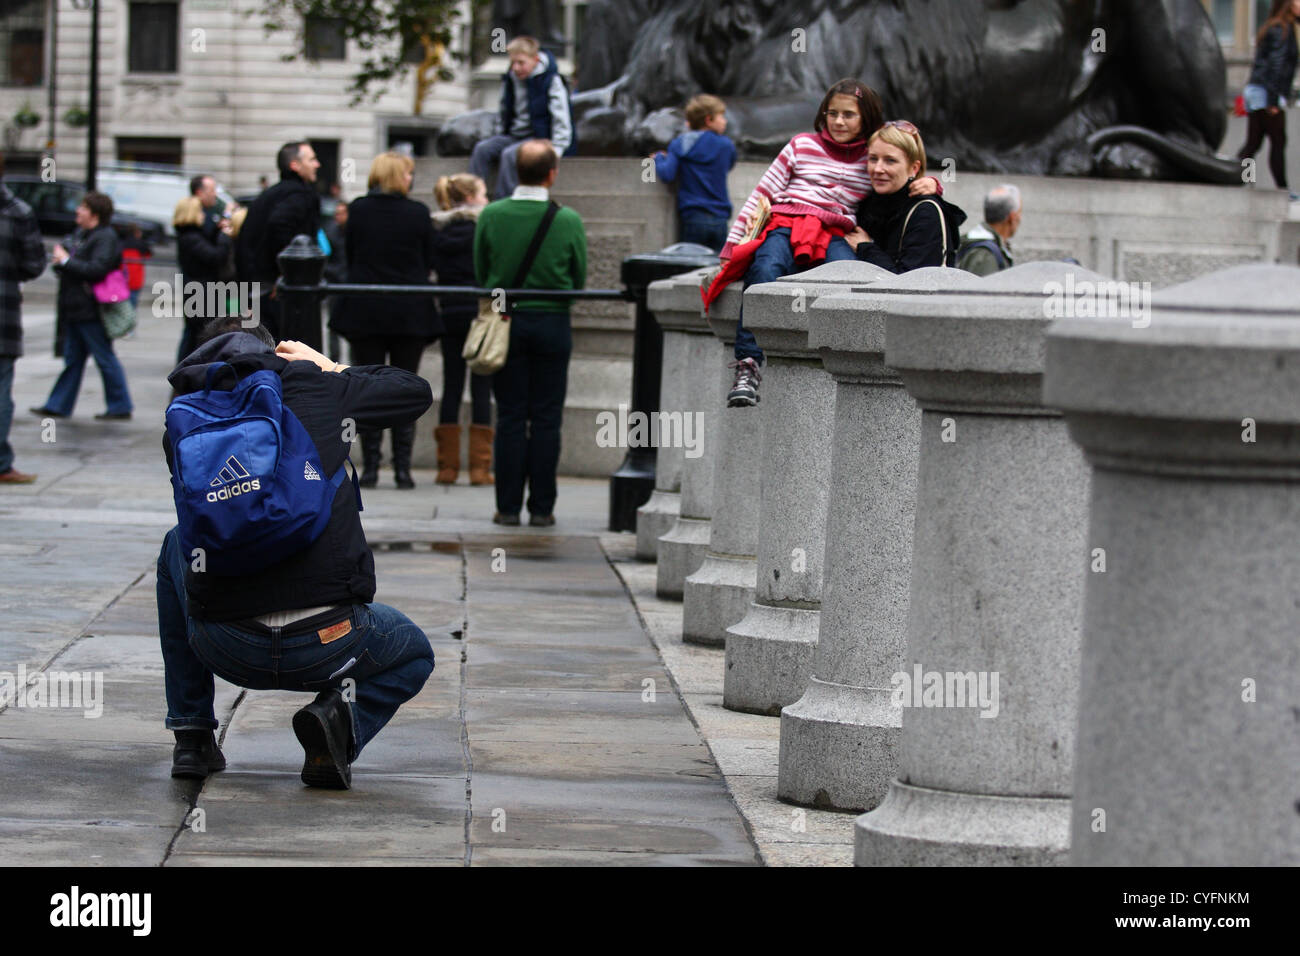 Un homme prend une photo d'une dame et l'enfant à Trafalgar Square Banque D'Images